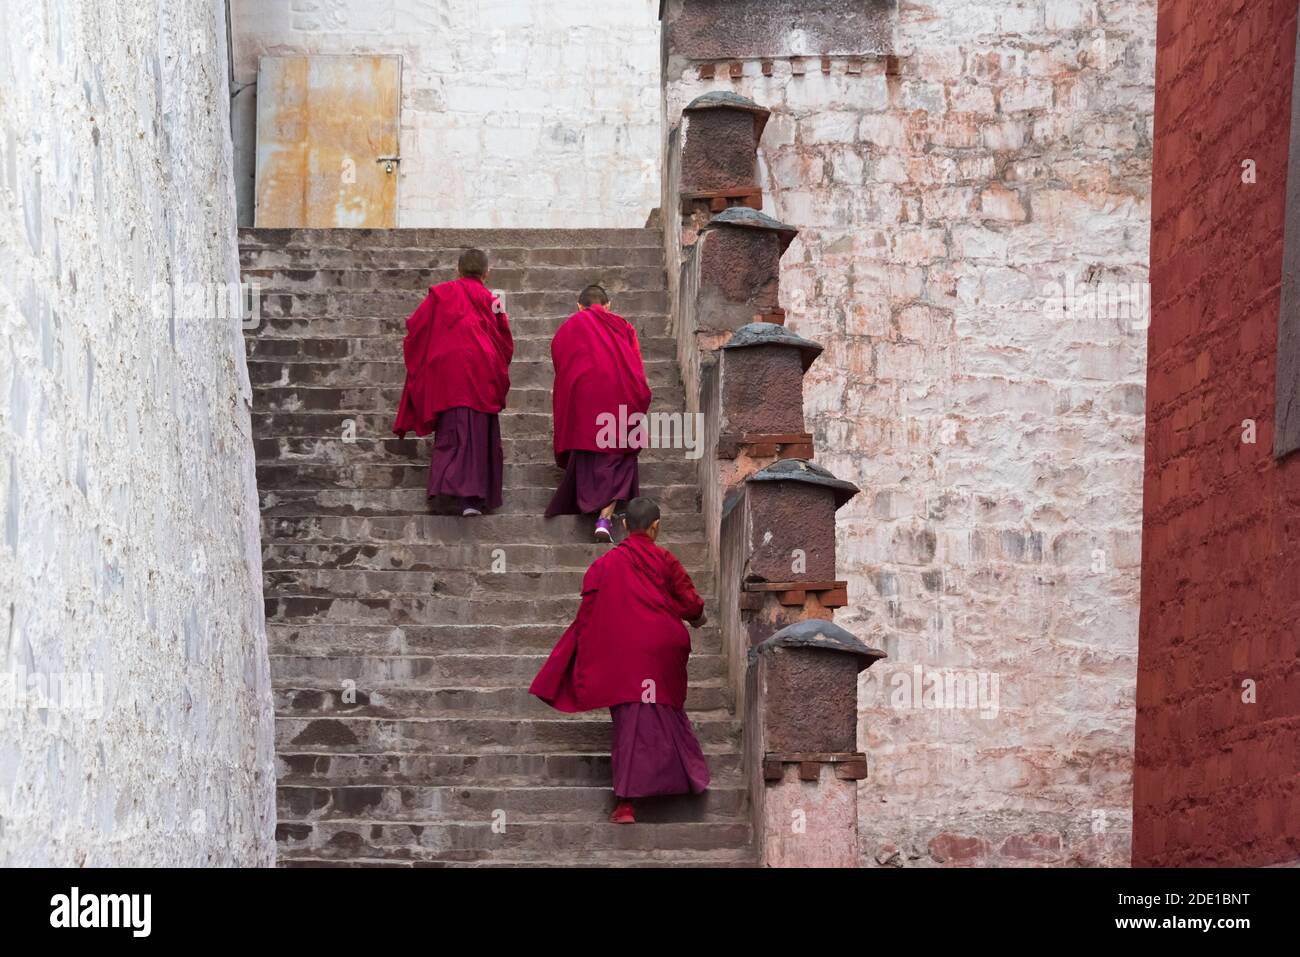 Monks in Tashi Lhunpo Monastery, Shigatse, Tibet, China Stock Photo